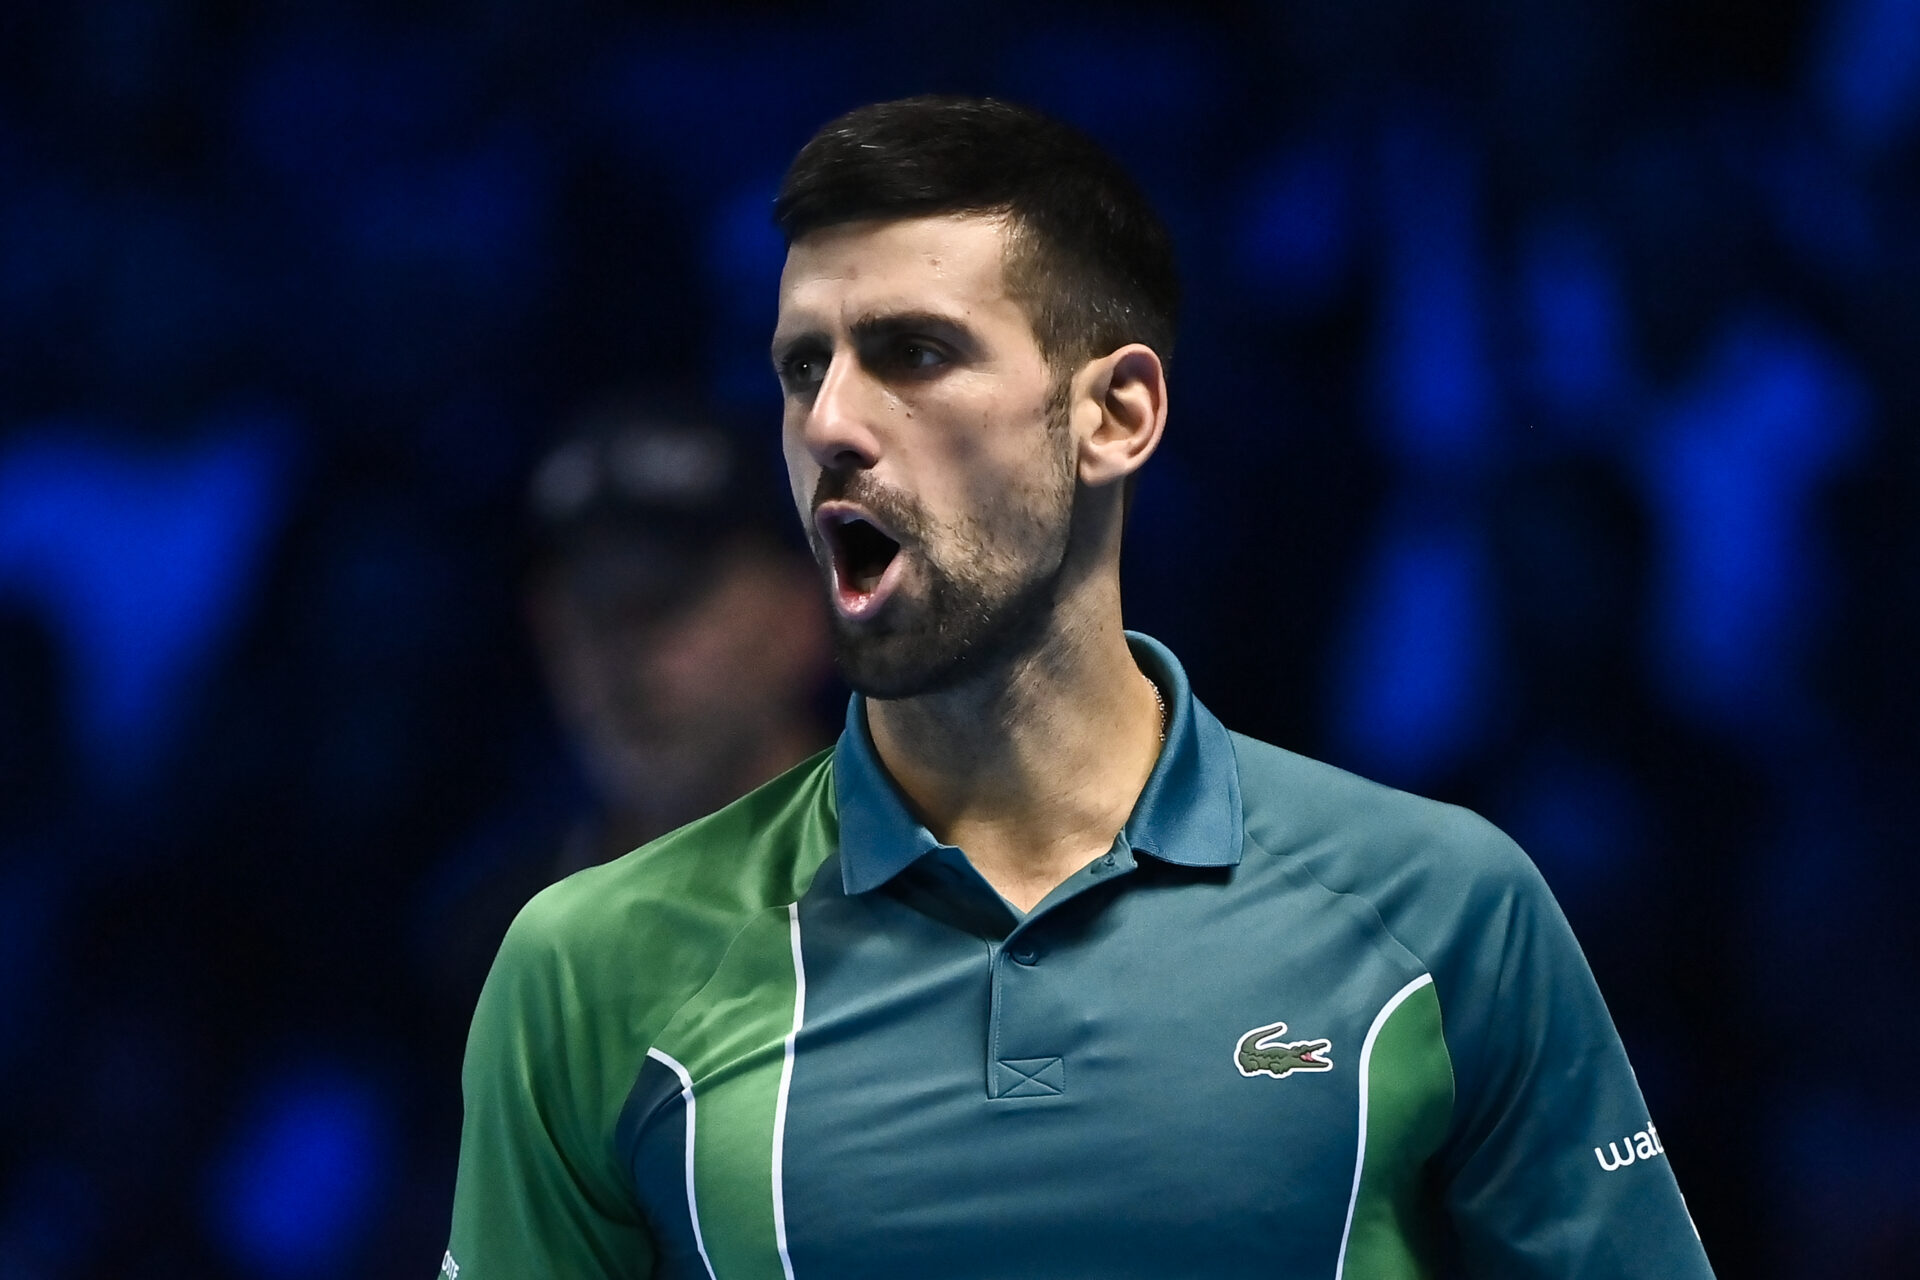 Novak Djokovic onzeker van halve finale ondanks winst in laatste groepsduel ATP Finals